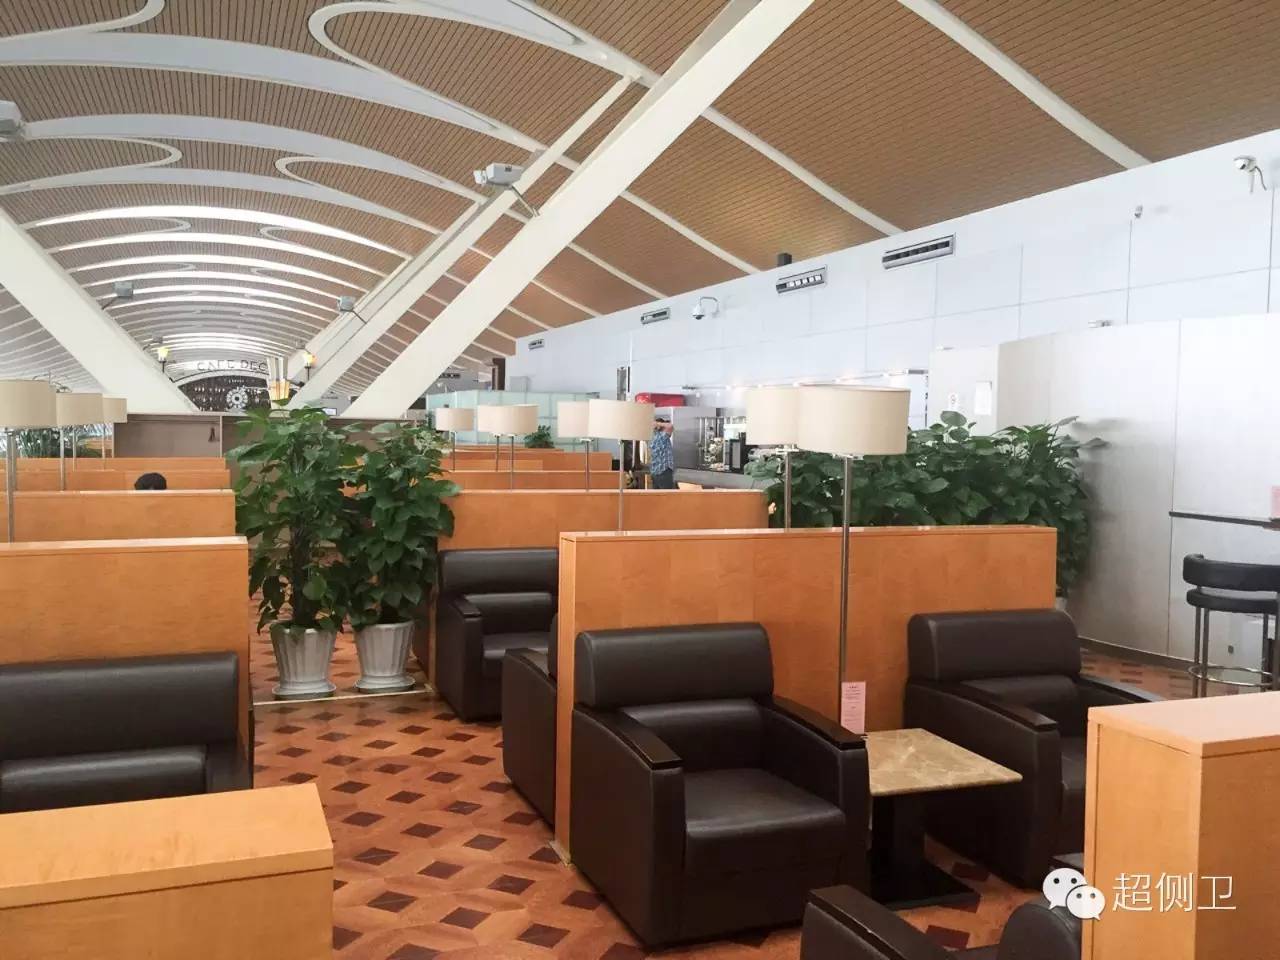 香港航空在浦东机场的商务舱休息室是与其他航空公用的浦东机场休息室